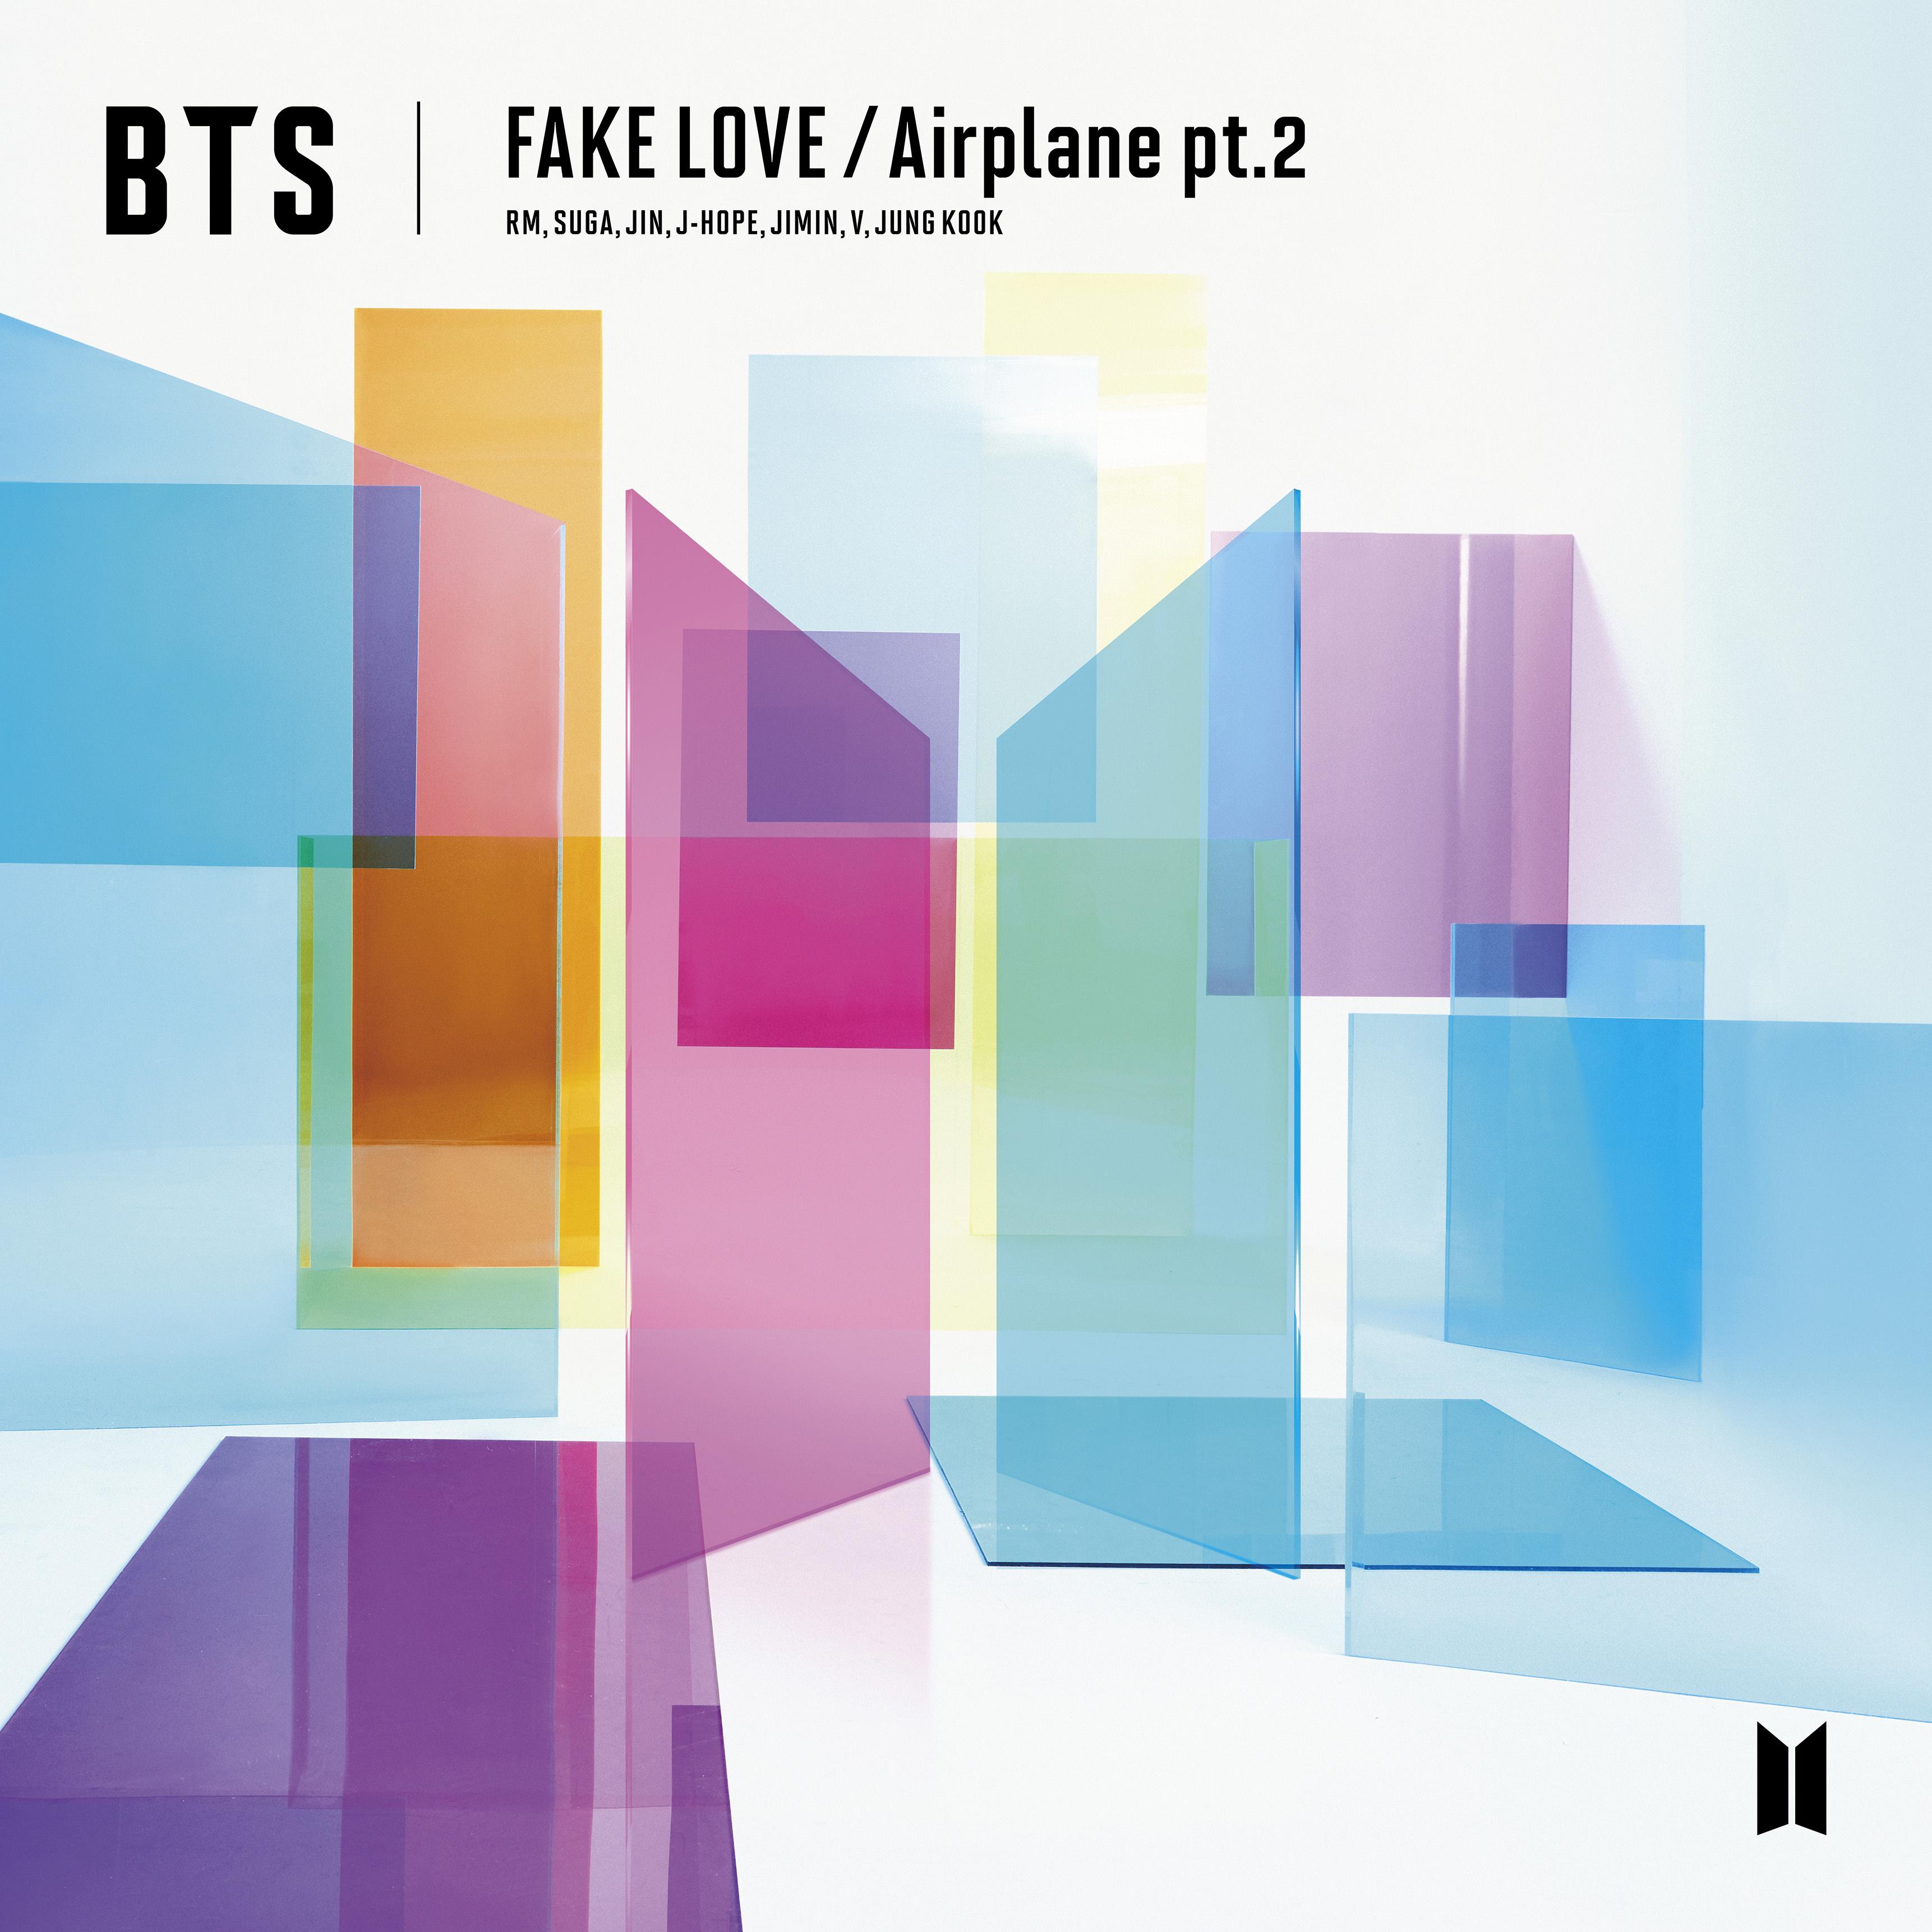 FAKE LOVE / Airplane pt.2